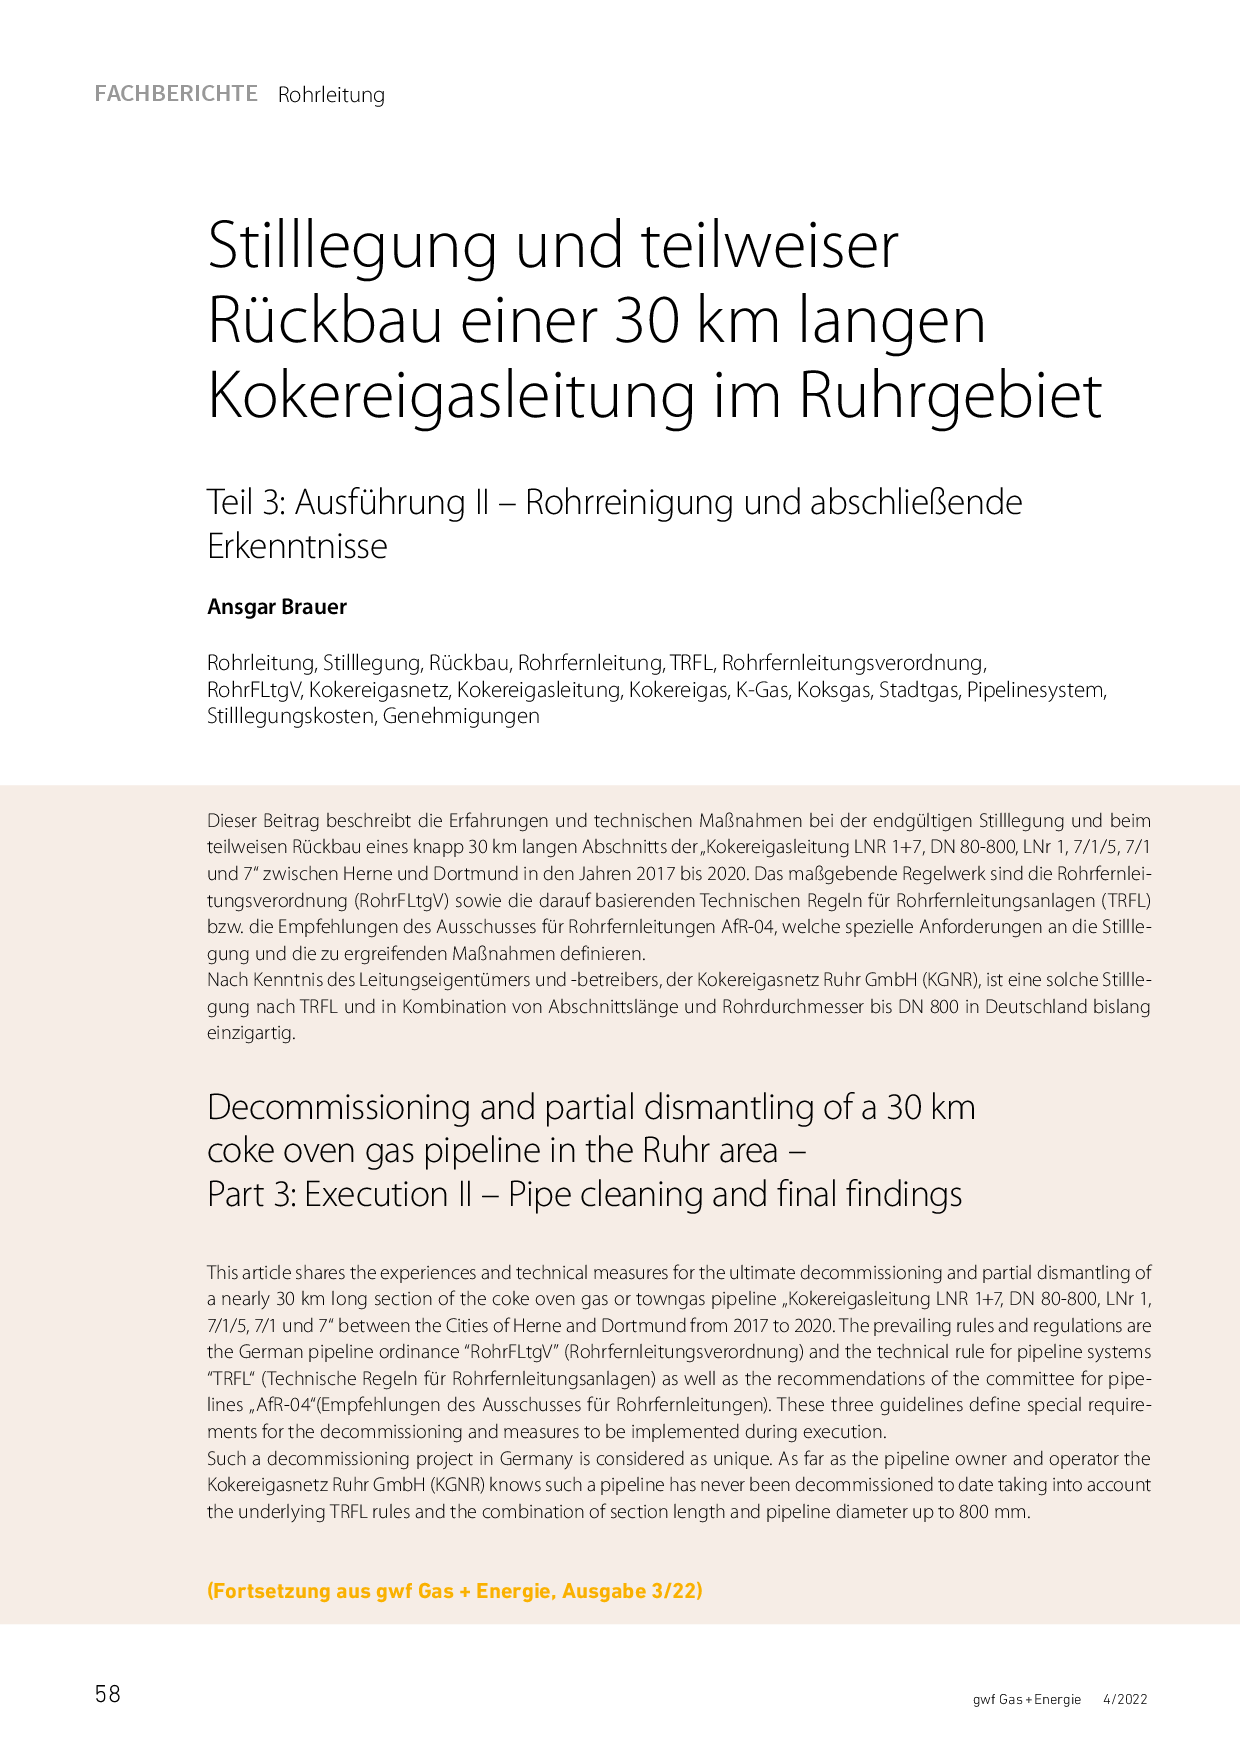 Stilllegung und teilweiser Rückbau einer 30 km langen Kokereigasleitung im Ruhrgebiet